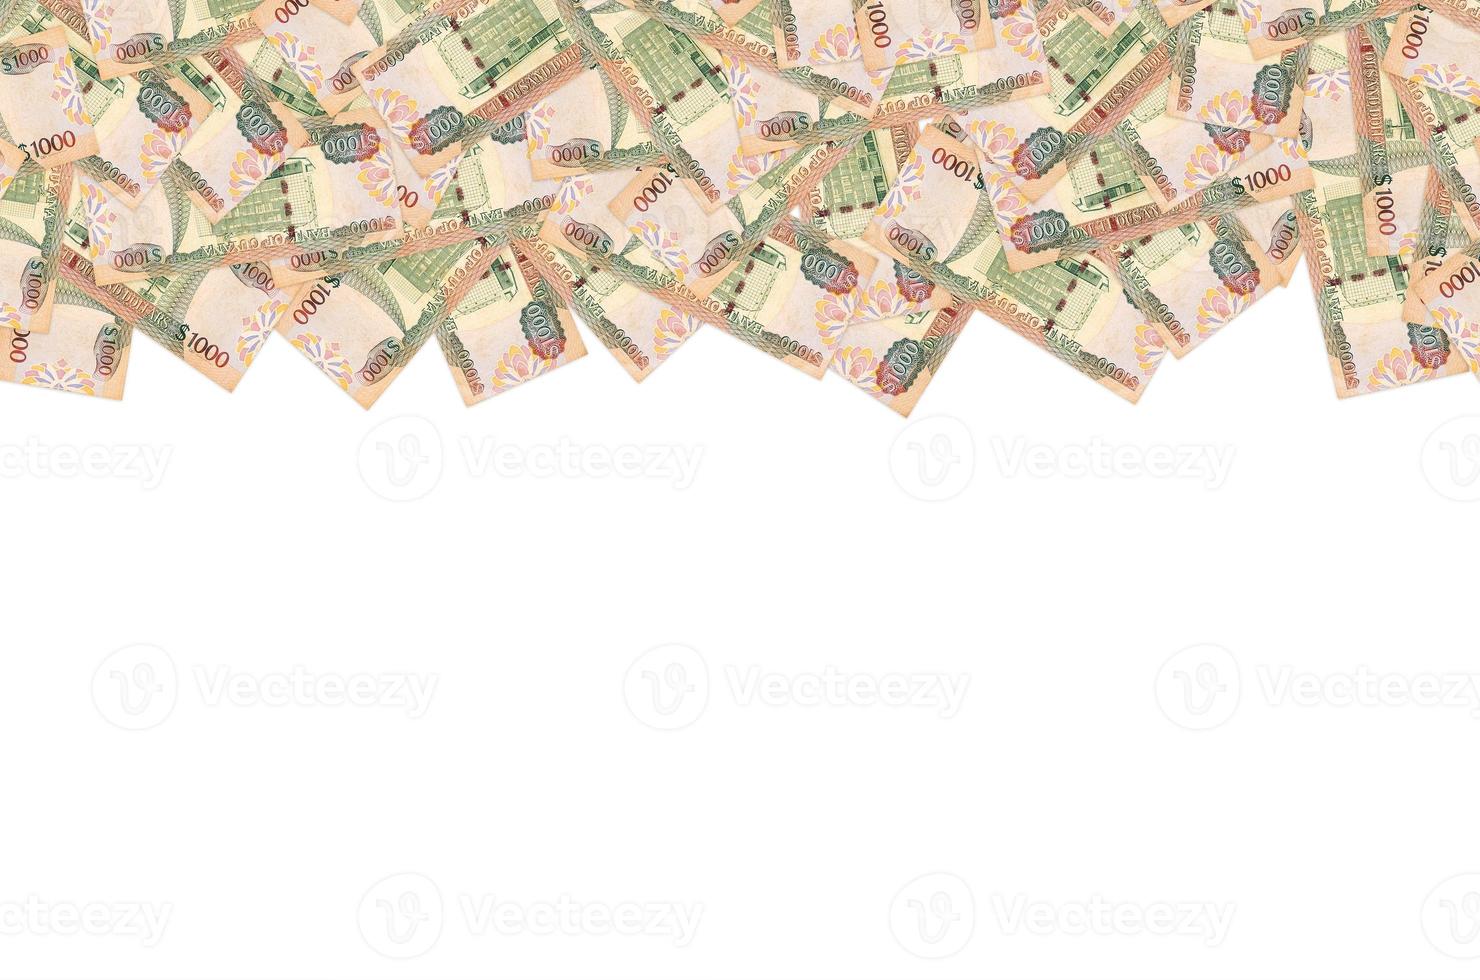 parte do padrão de notas de 1000 dólares da guiana marrom foto